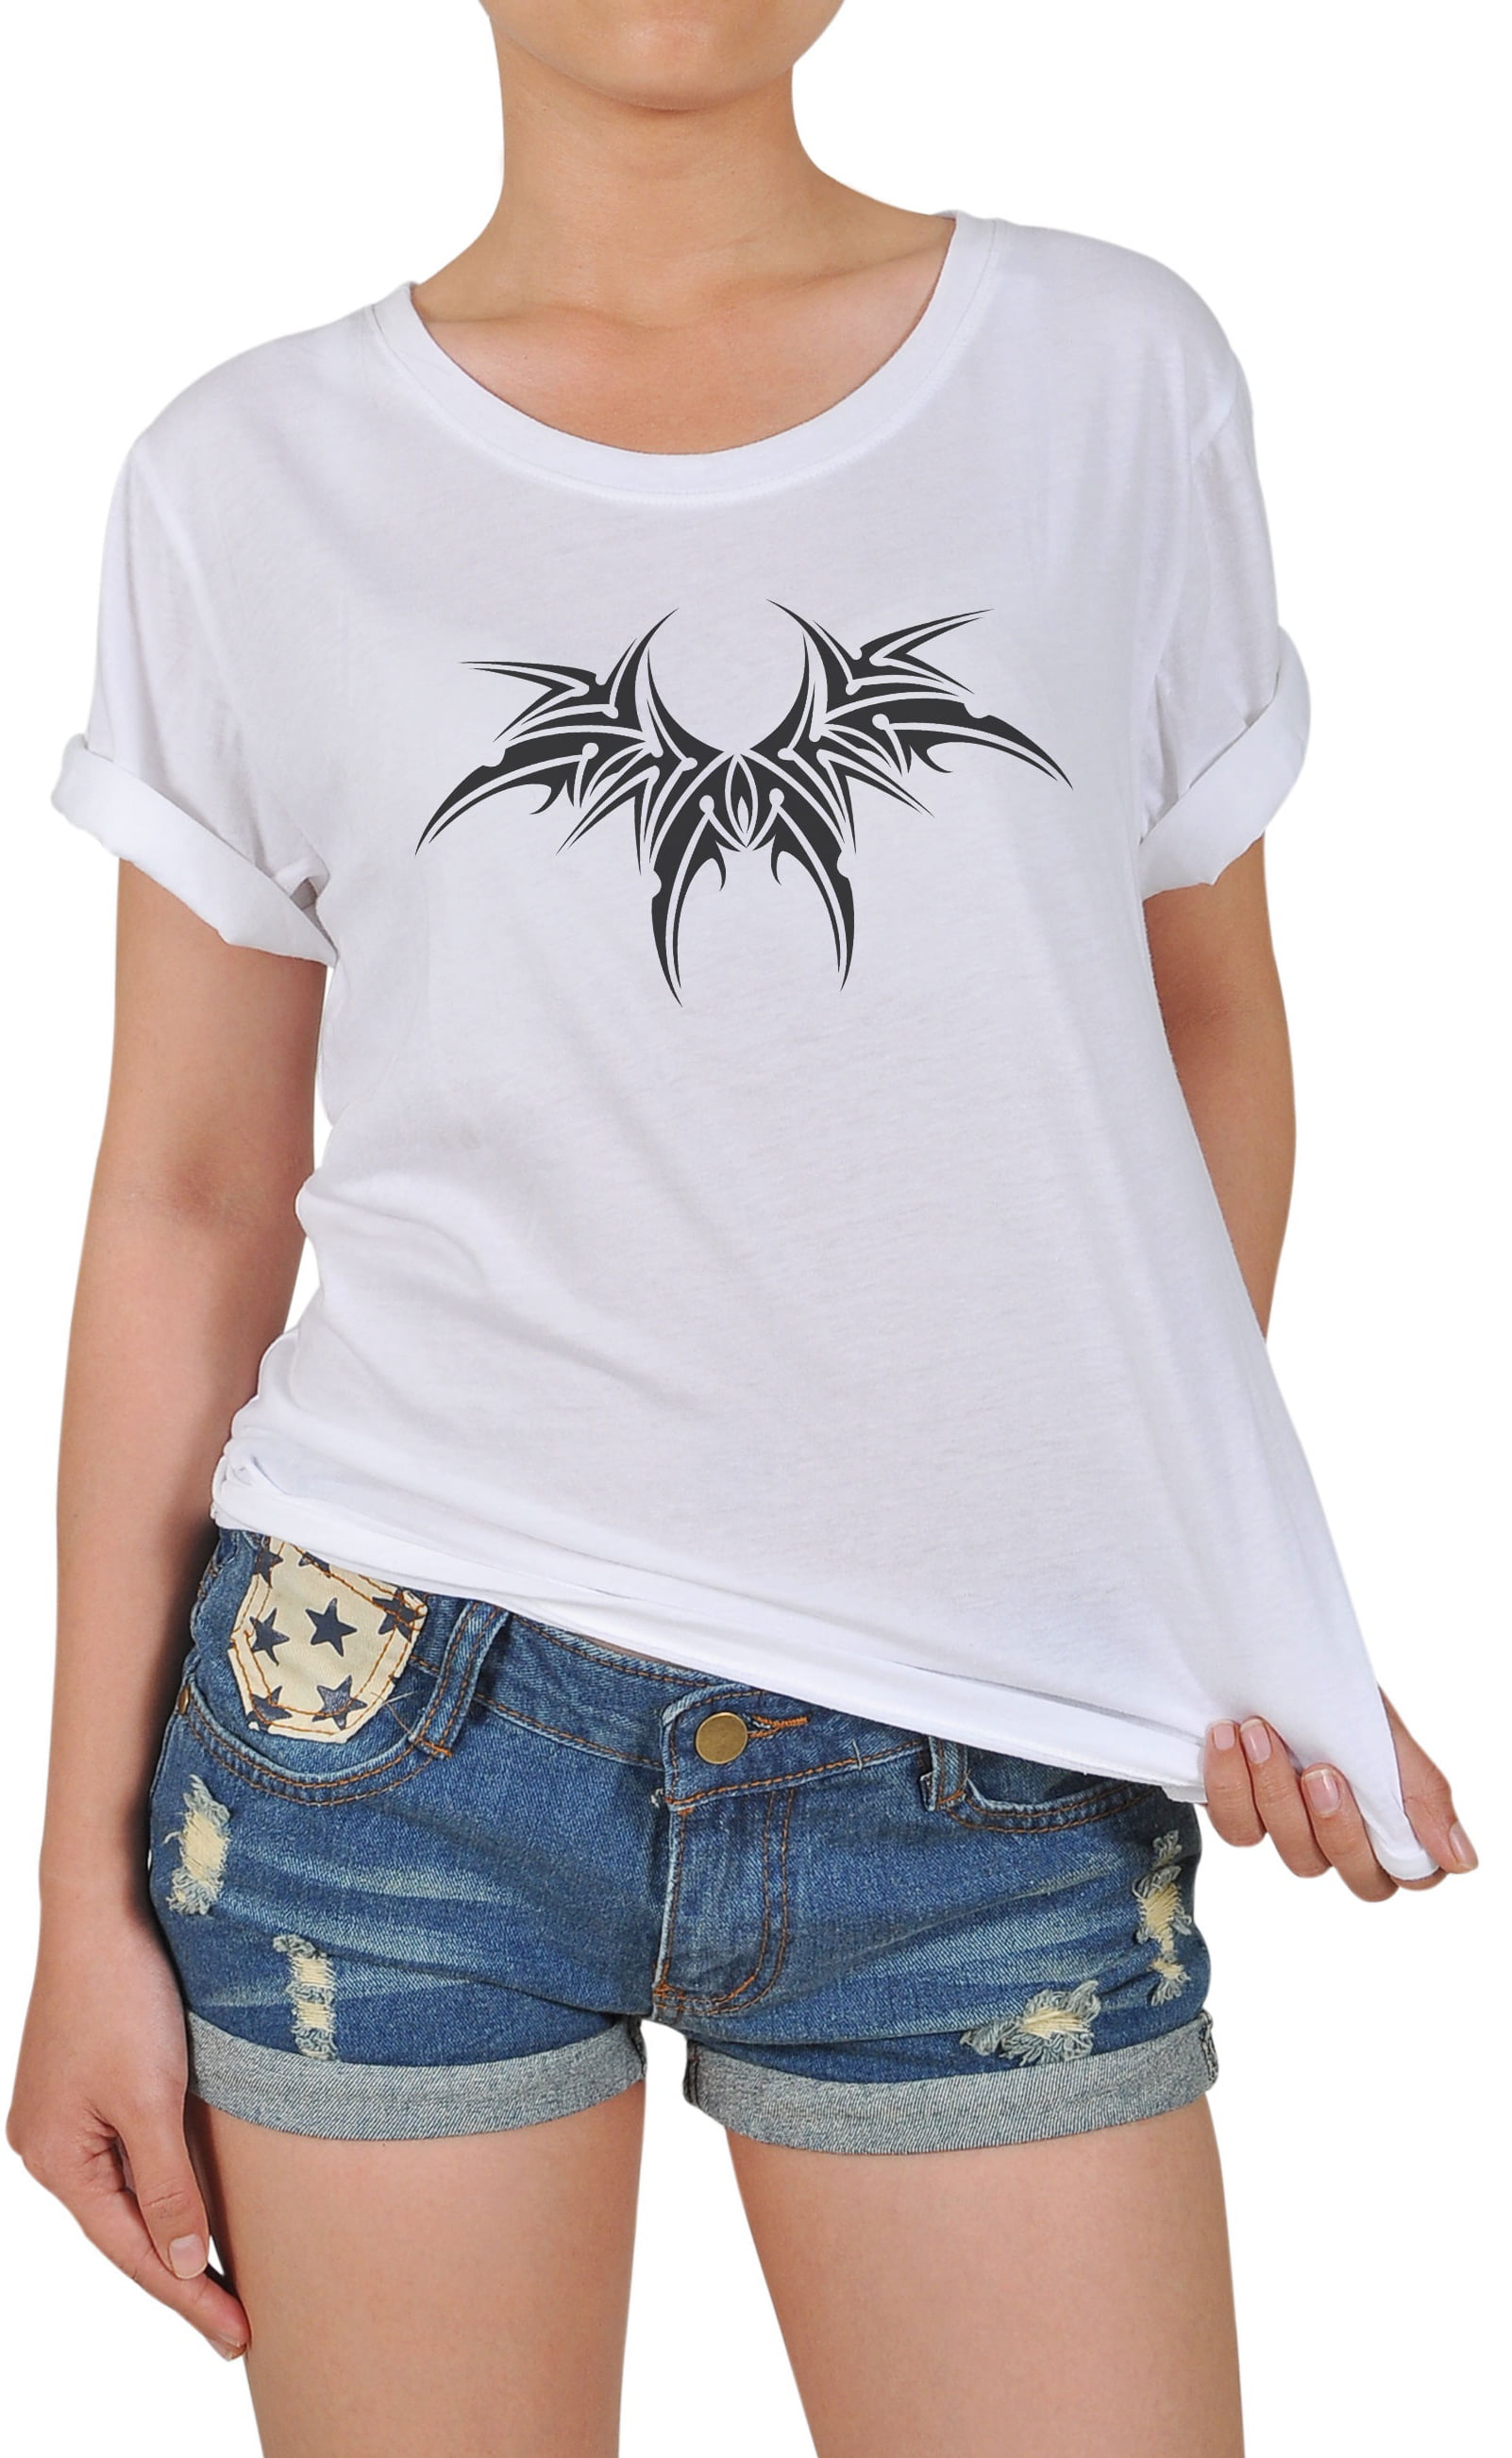 Shape Tribal Bat Tattoo -2 Printed 100% Cotton T-shirt WTS_12 S -  